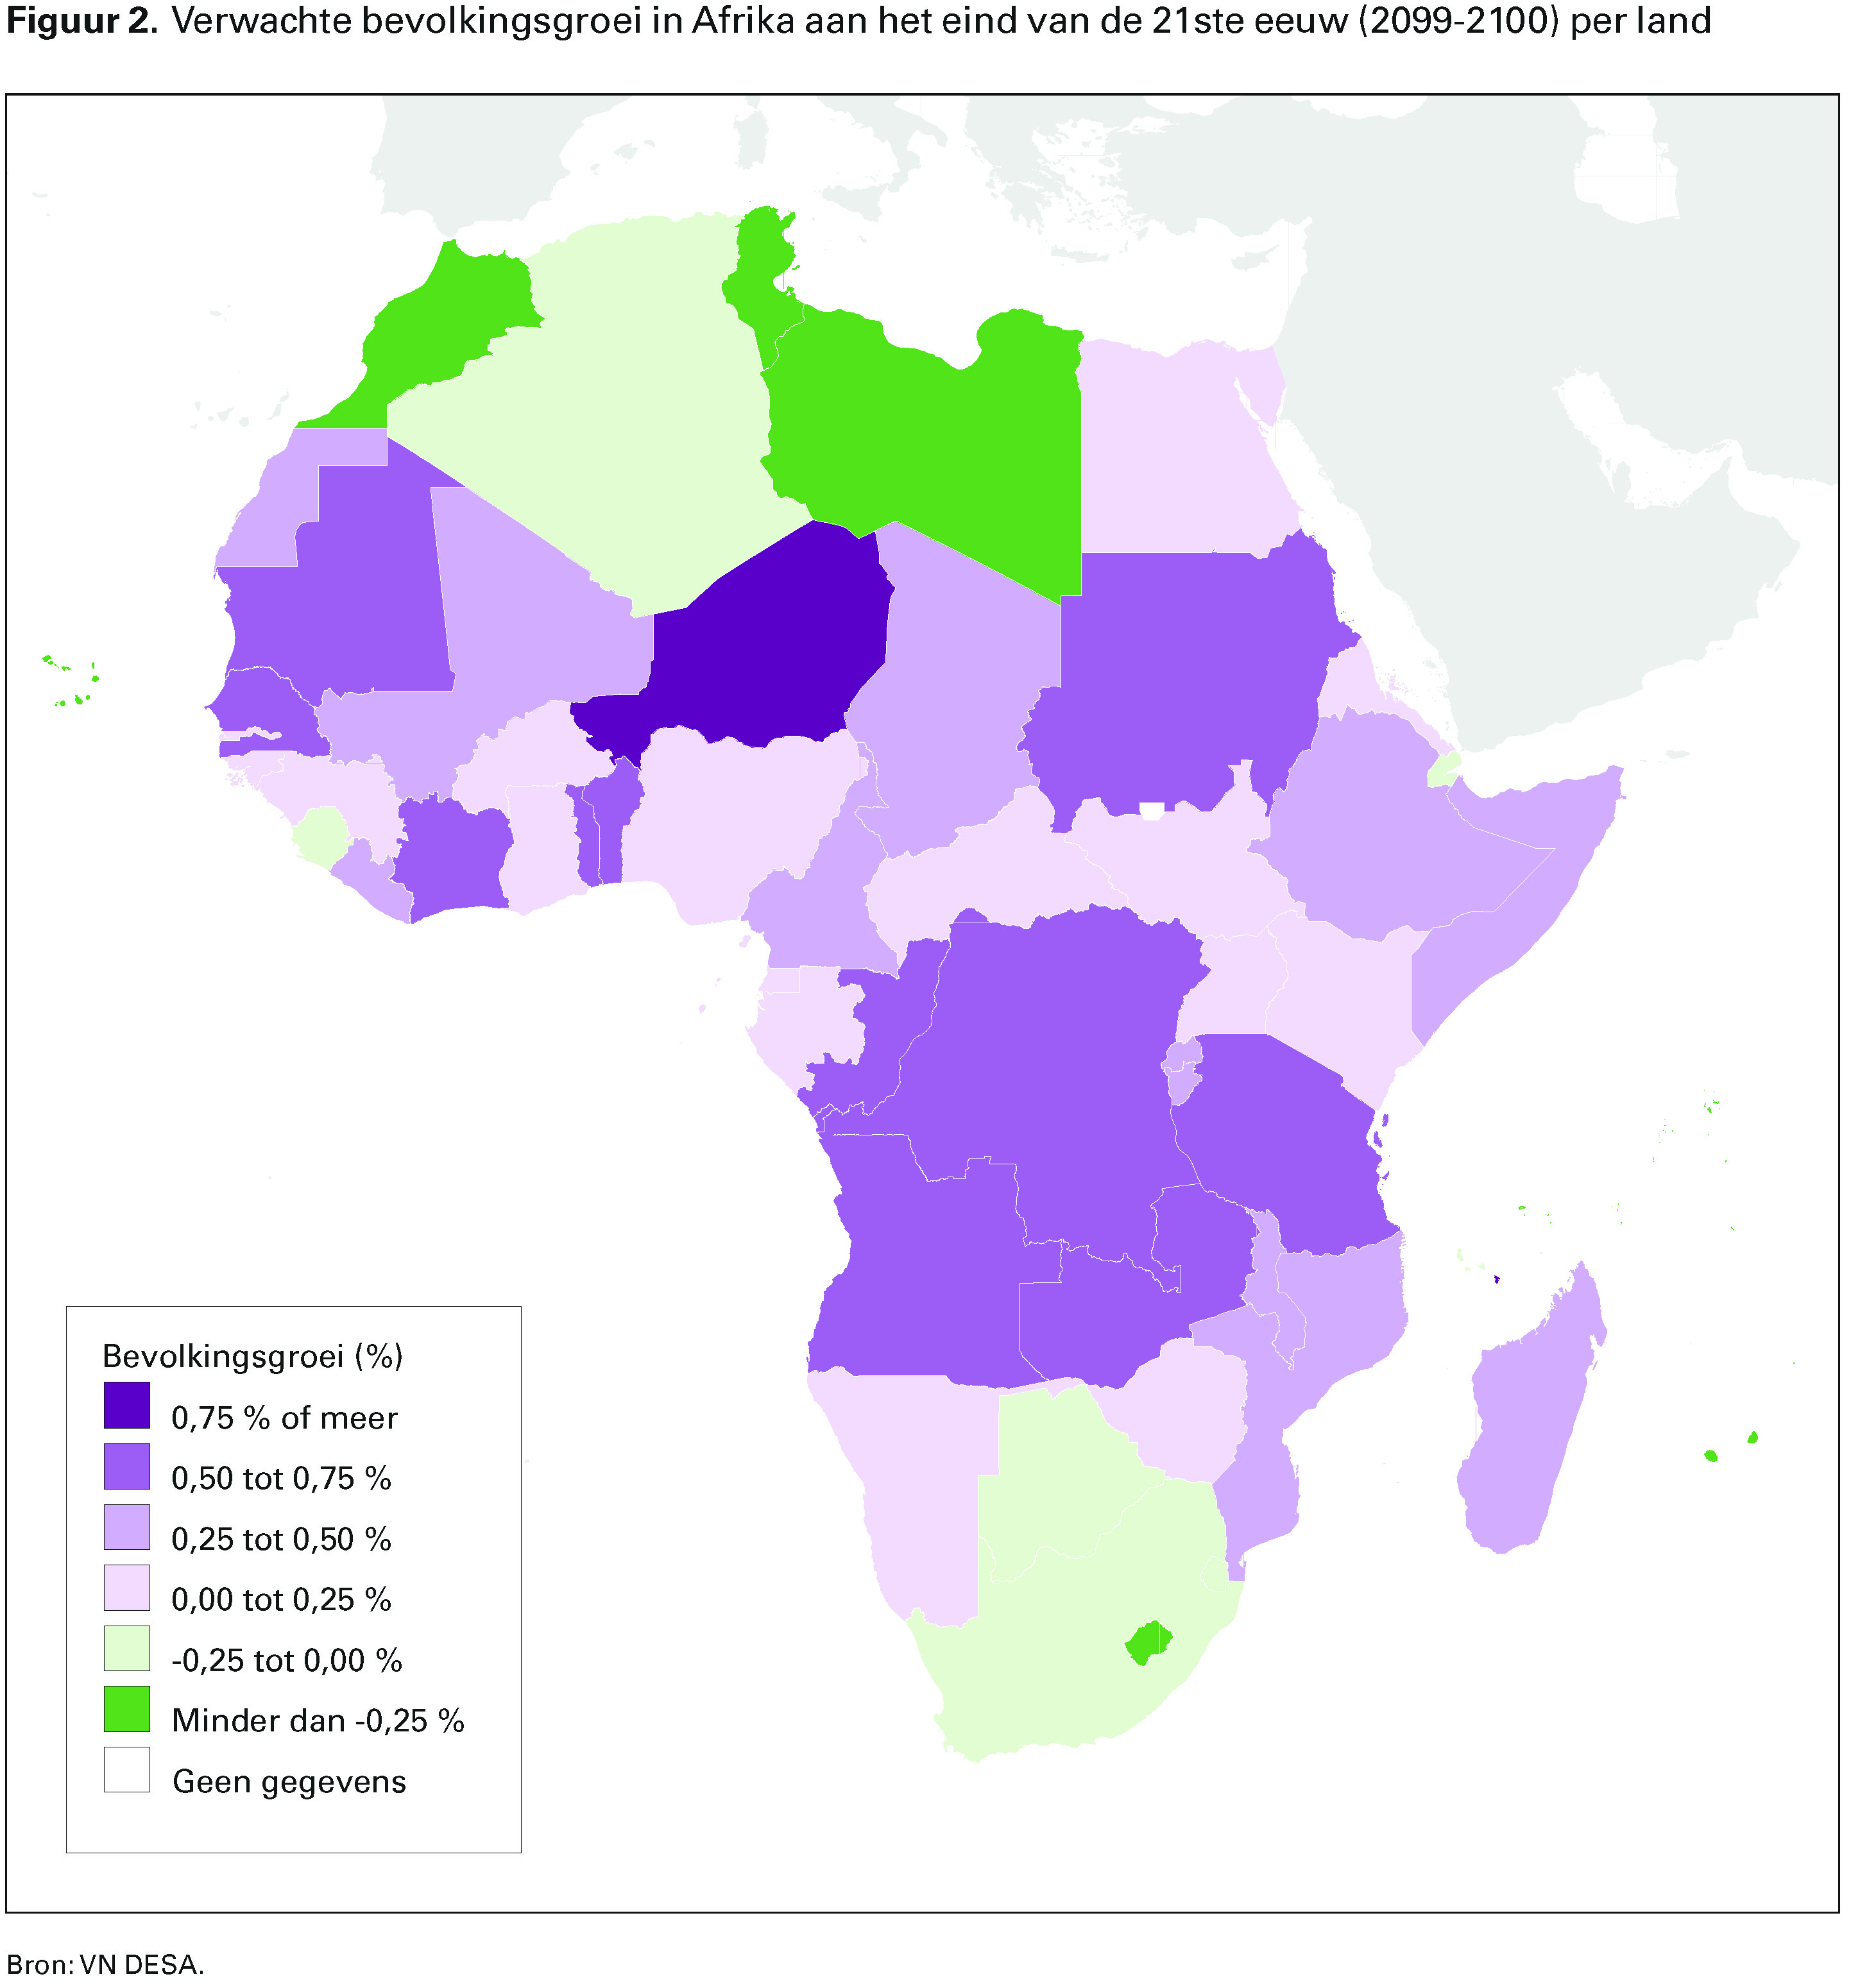 Figuur 2. Verwachte bevolkingsgroei in Afrika aan het eind van de 21ste eeuw (2099-2100) per land